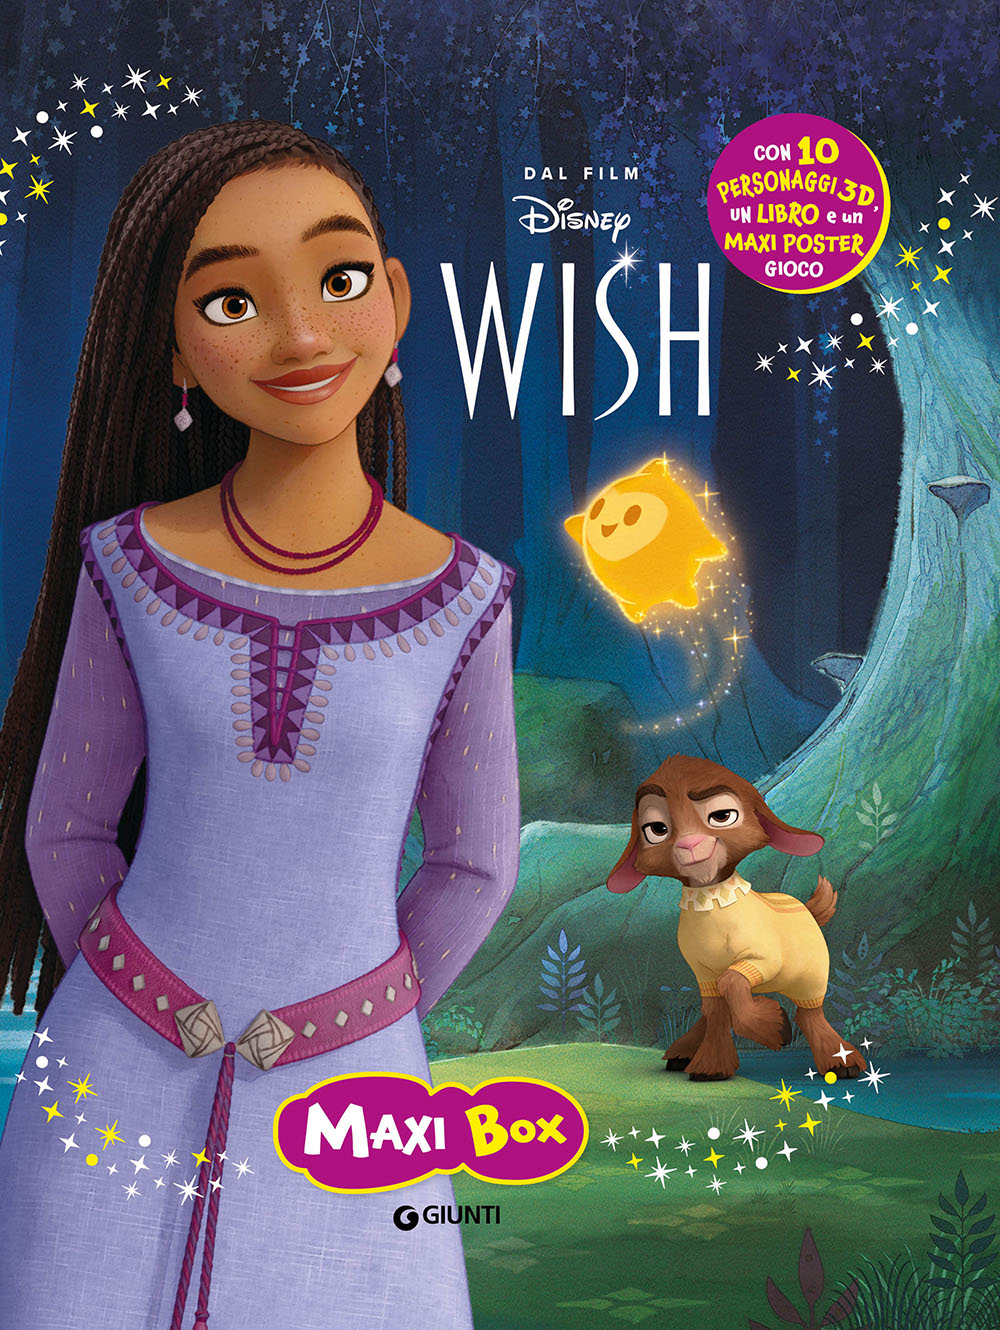 Wish Maxi Box. Con 10 personaggi 3d, un libro e un maxi poster gioco